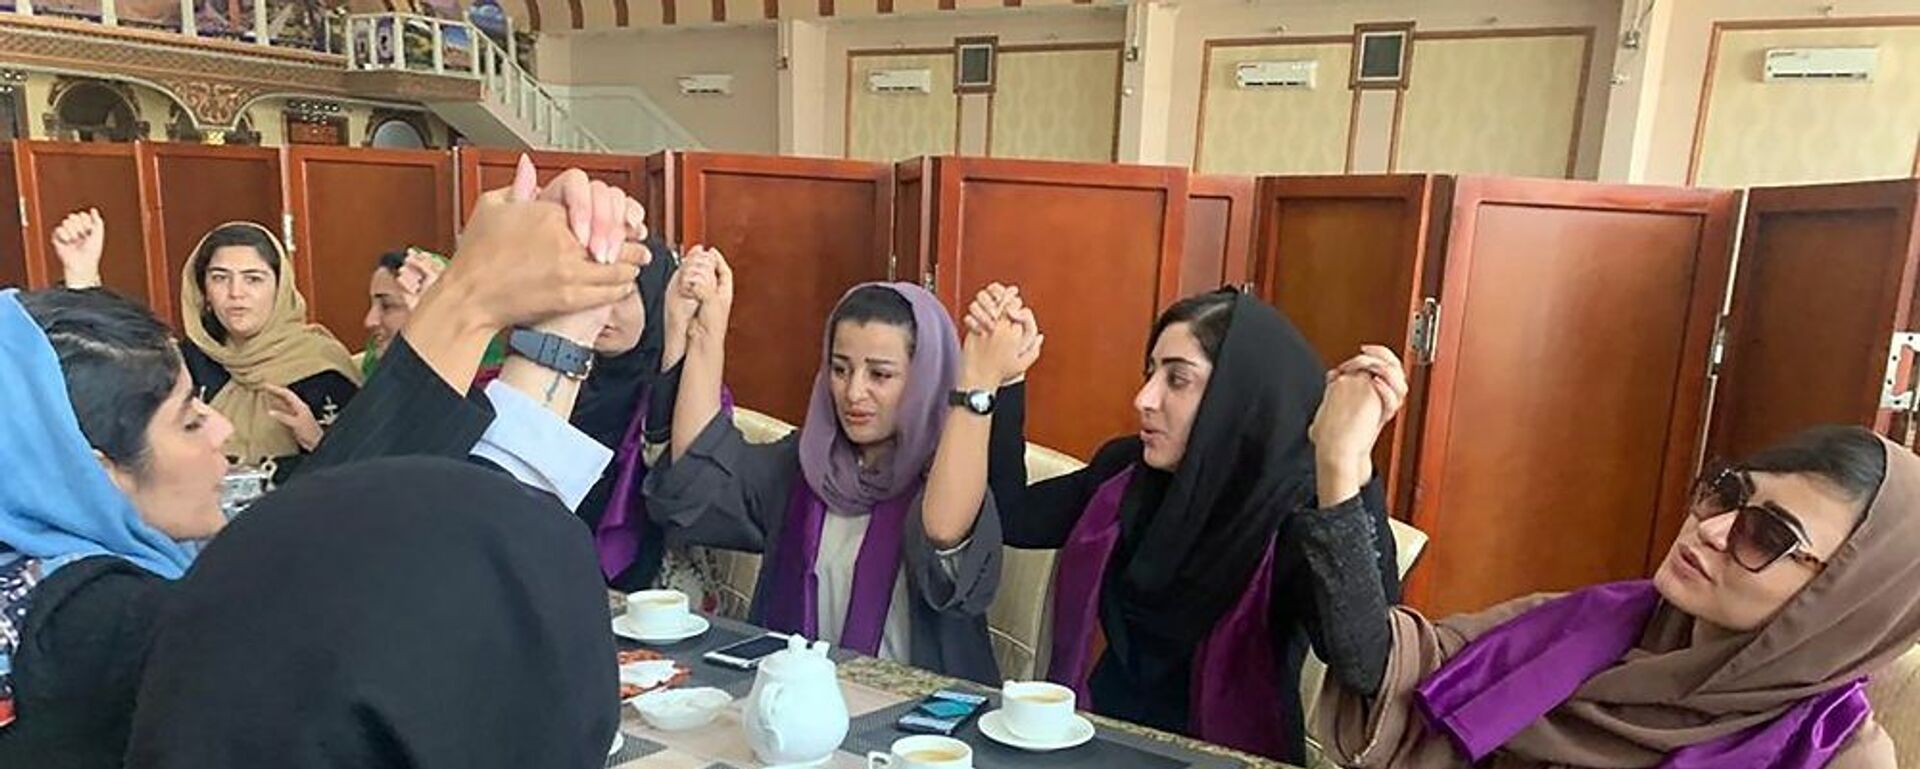 نساء أفغانيات يطالبن بحقوقهن في ظل حكم حركة طالبان بعد السيطرة على كابول، أفغانستان، 4 سبتمبر/ أيلول 2021 - سبوتنيك عربي, 1920, 28.09.2021